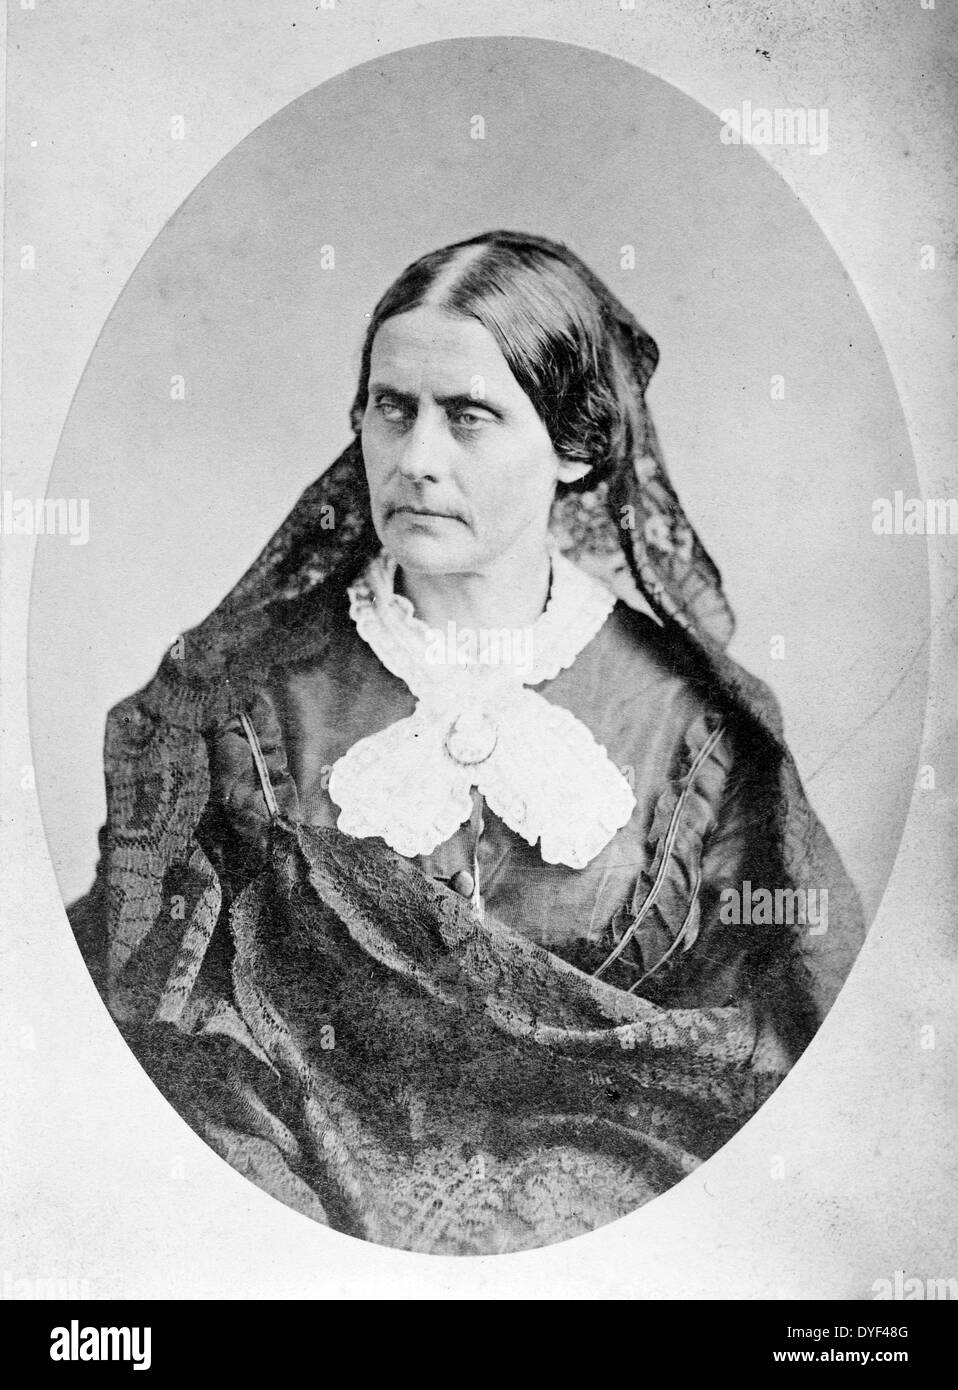 Susan B. Anthony 1865. Un prominente American leader dei diritti civili che hanno svolto un ruolo cruciale nel XIX secolo i diritti delle donne movimento per introdurre il suffragio femminile negli Stati Uniti. Foto Stock